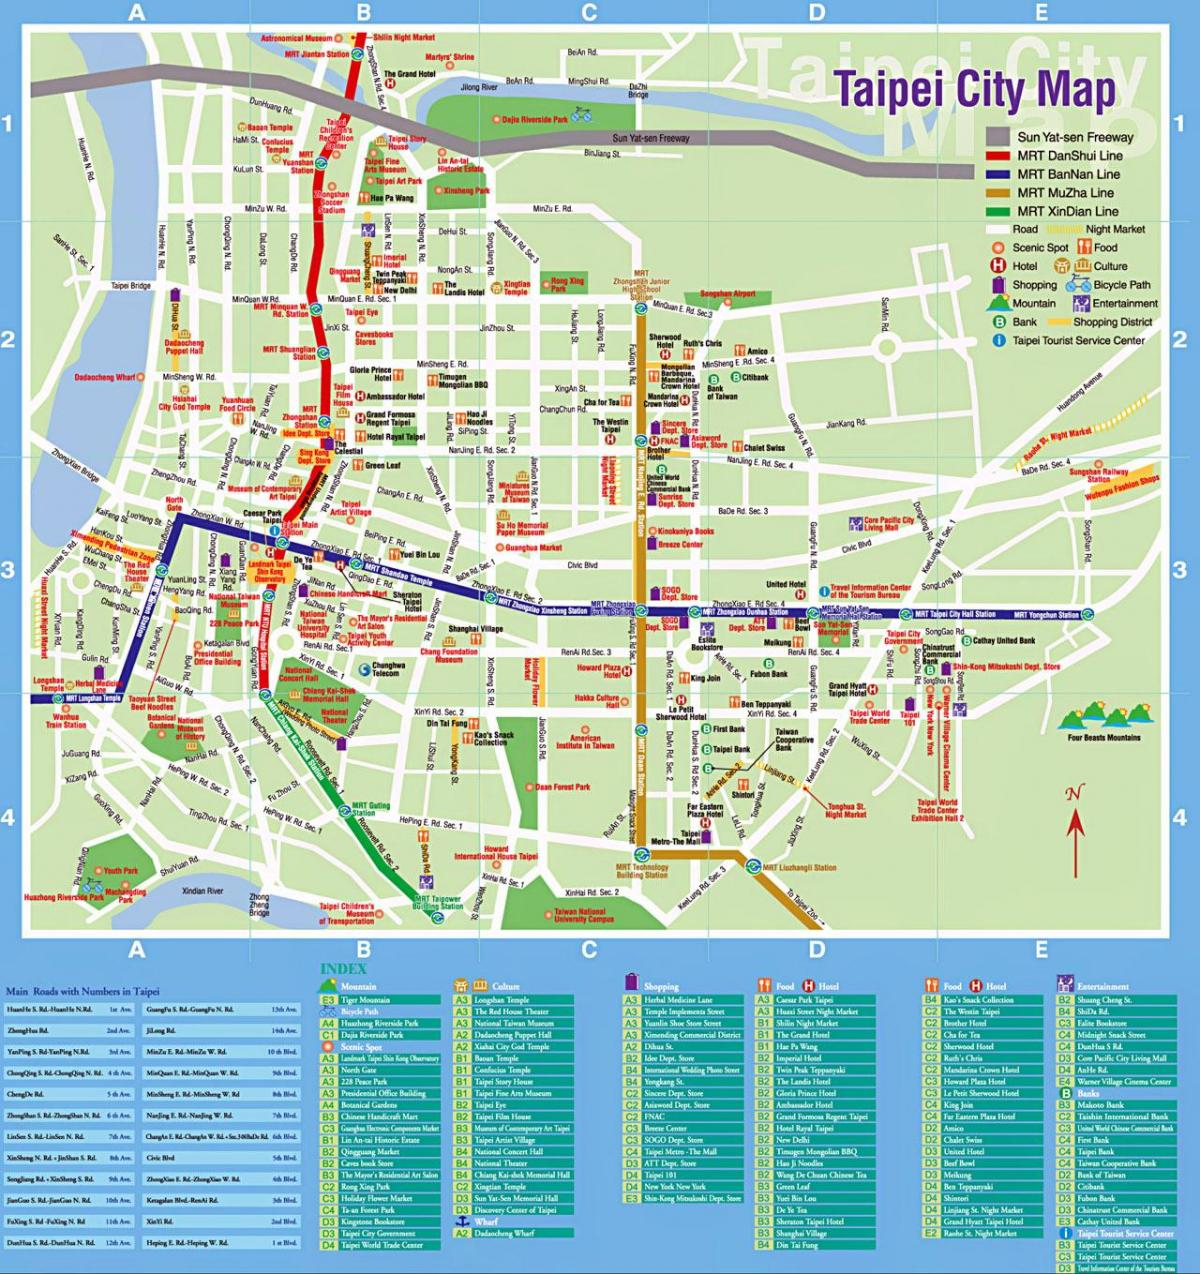 Taipei turistik yerler haritası